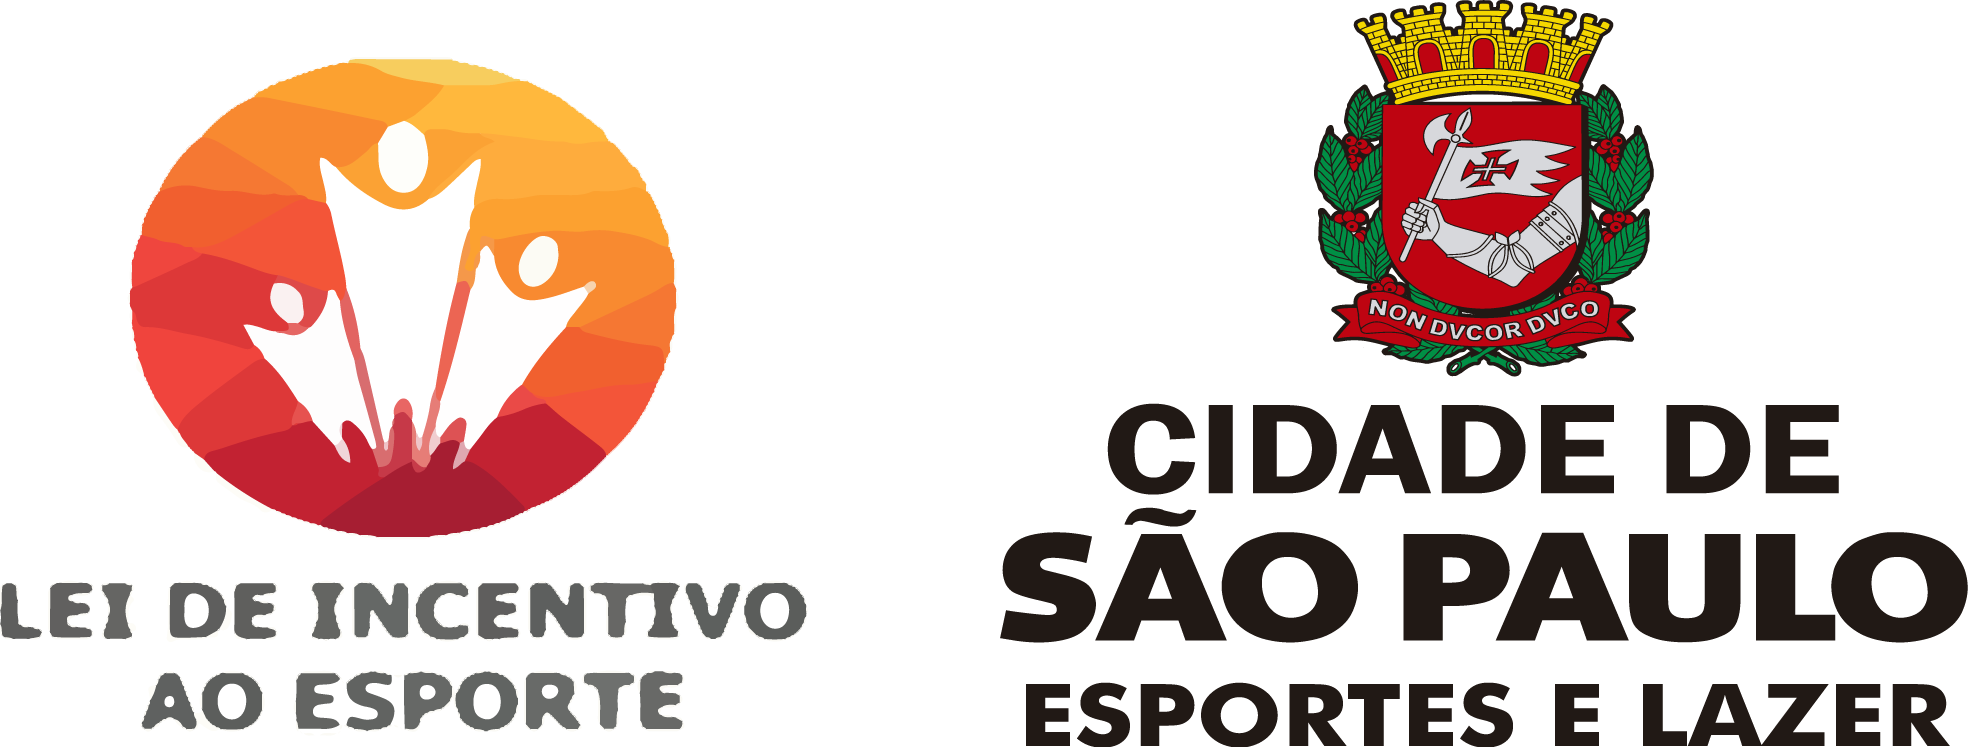 Na imagem, logo da Lei Municipal de Incentivo ao Esporte e o brasão da Secretaria Municipal de Esportes e Lazer.